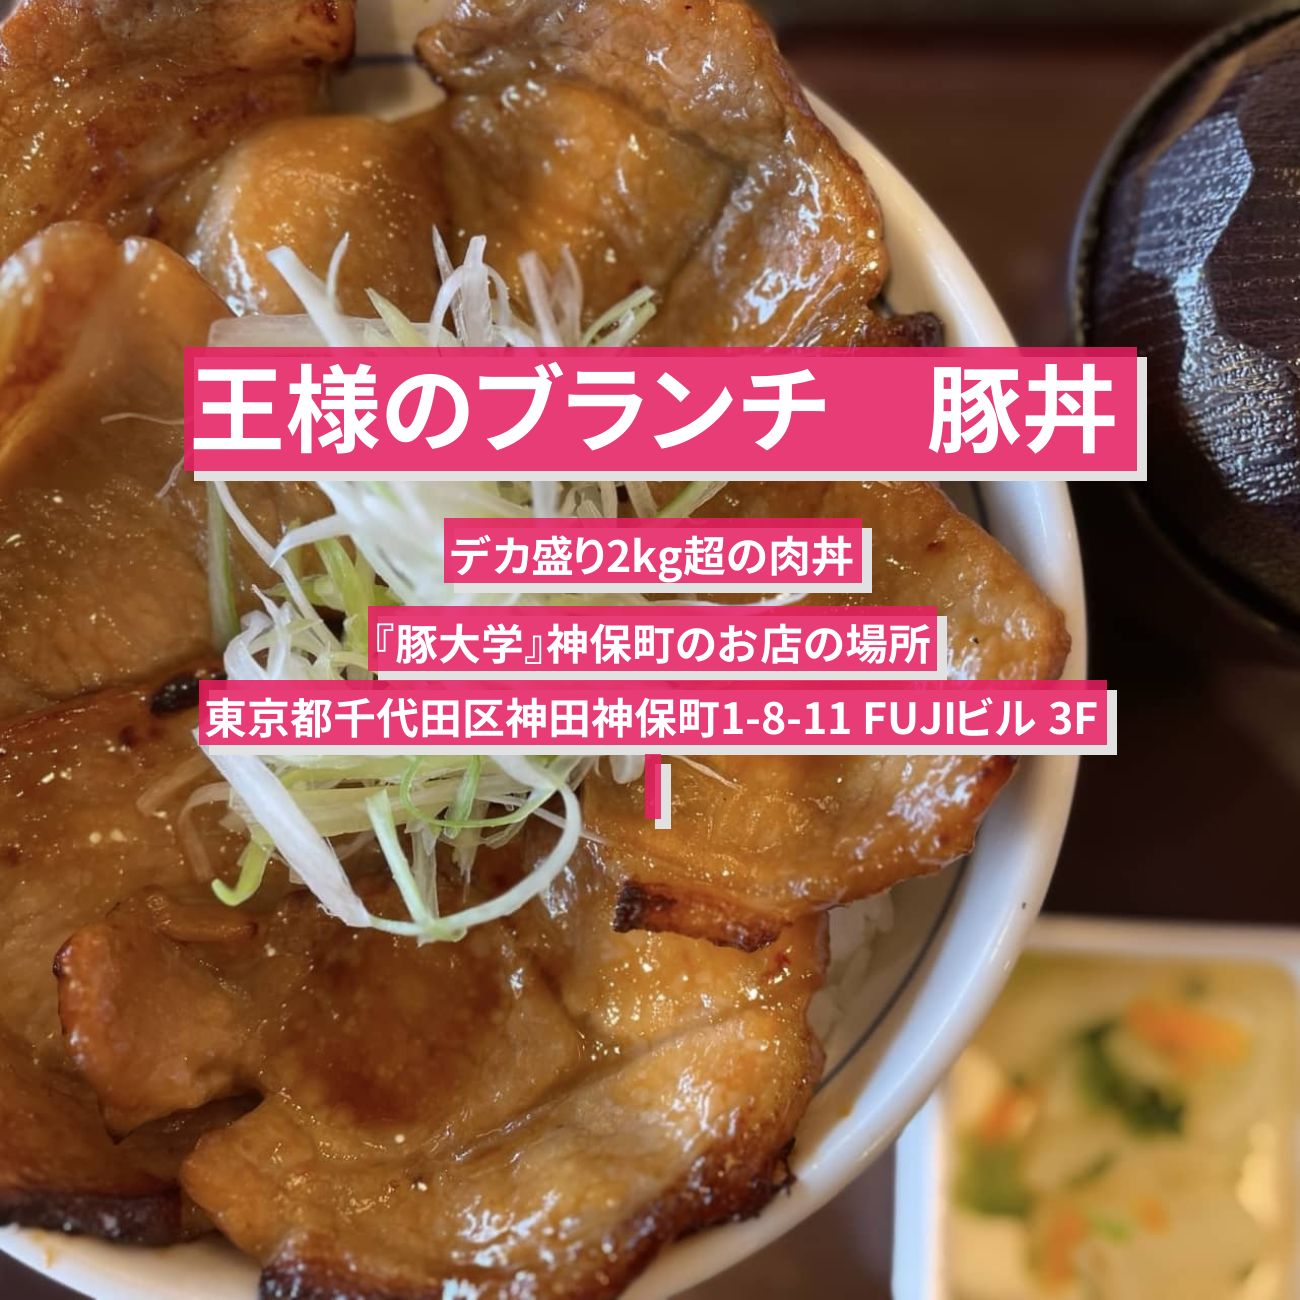 【王様のブランチ】豚丼(デカ盛り2kg超)『豚大学』神保町のお店の場所